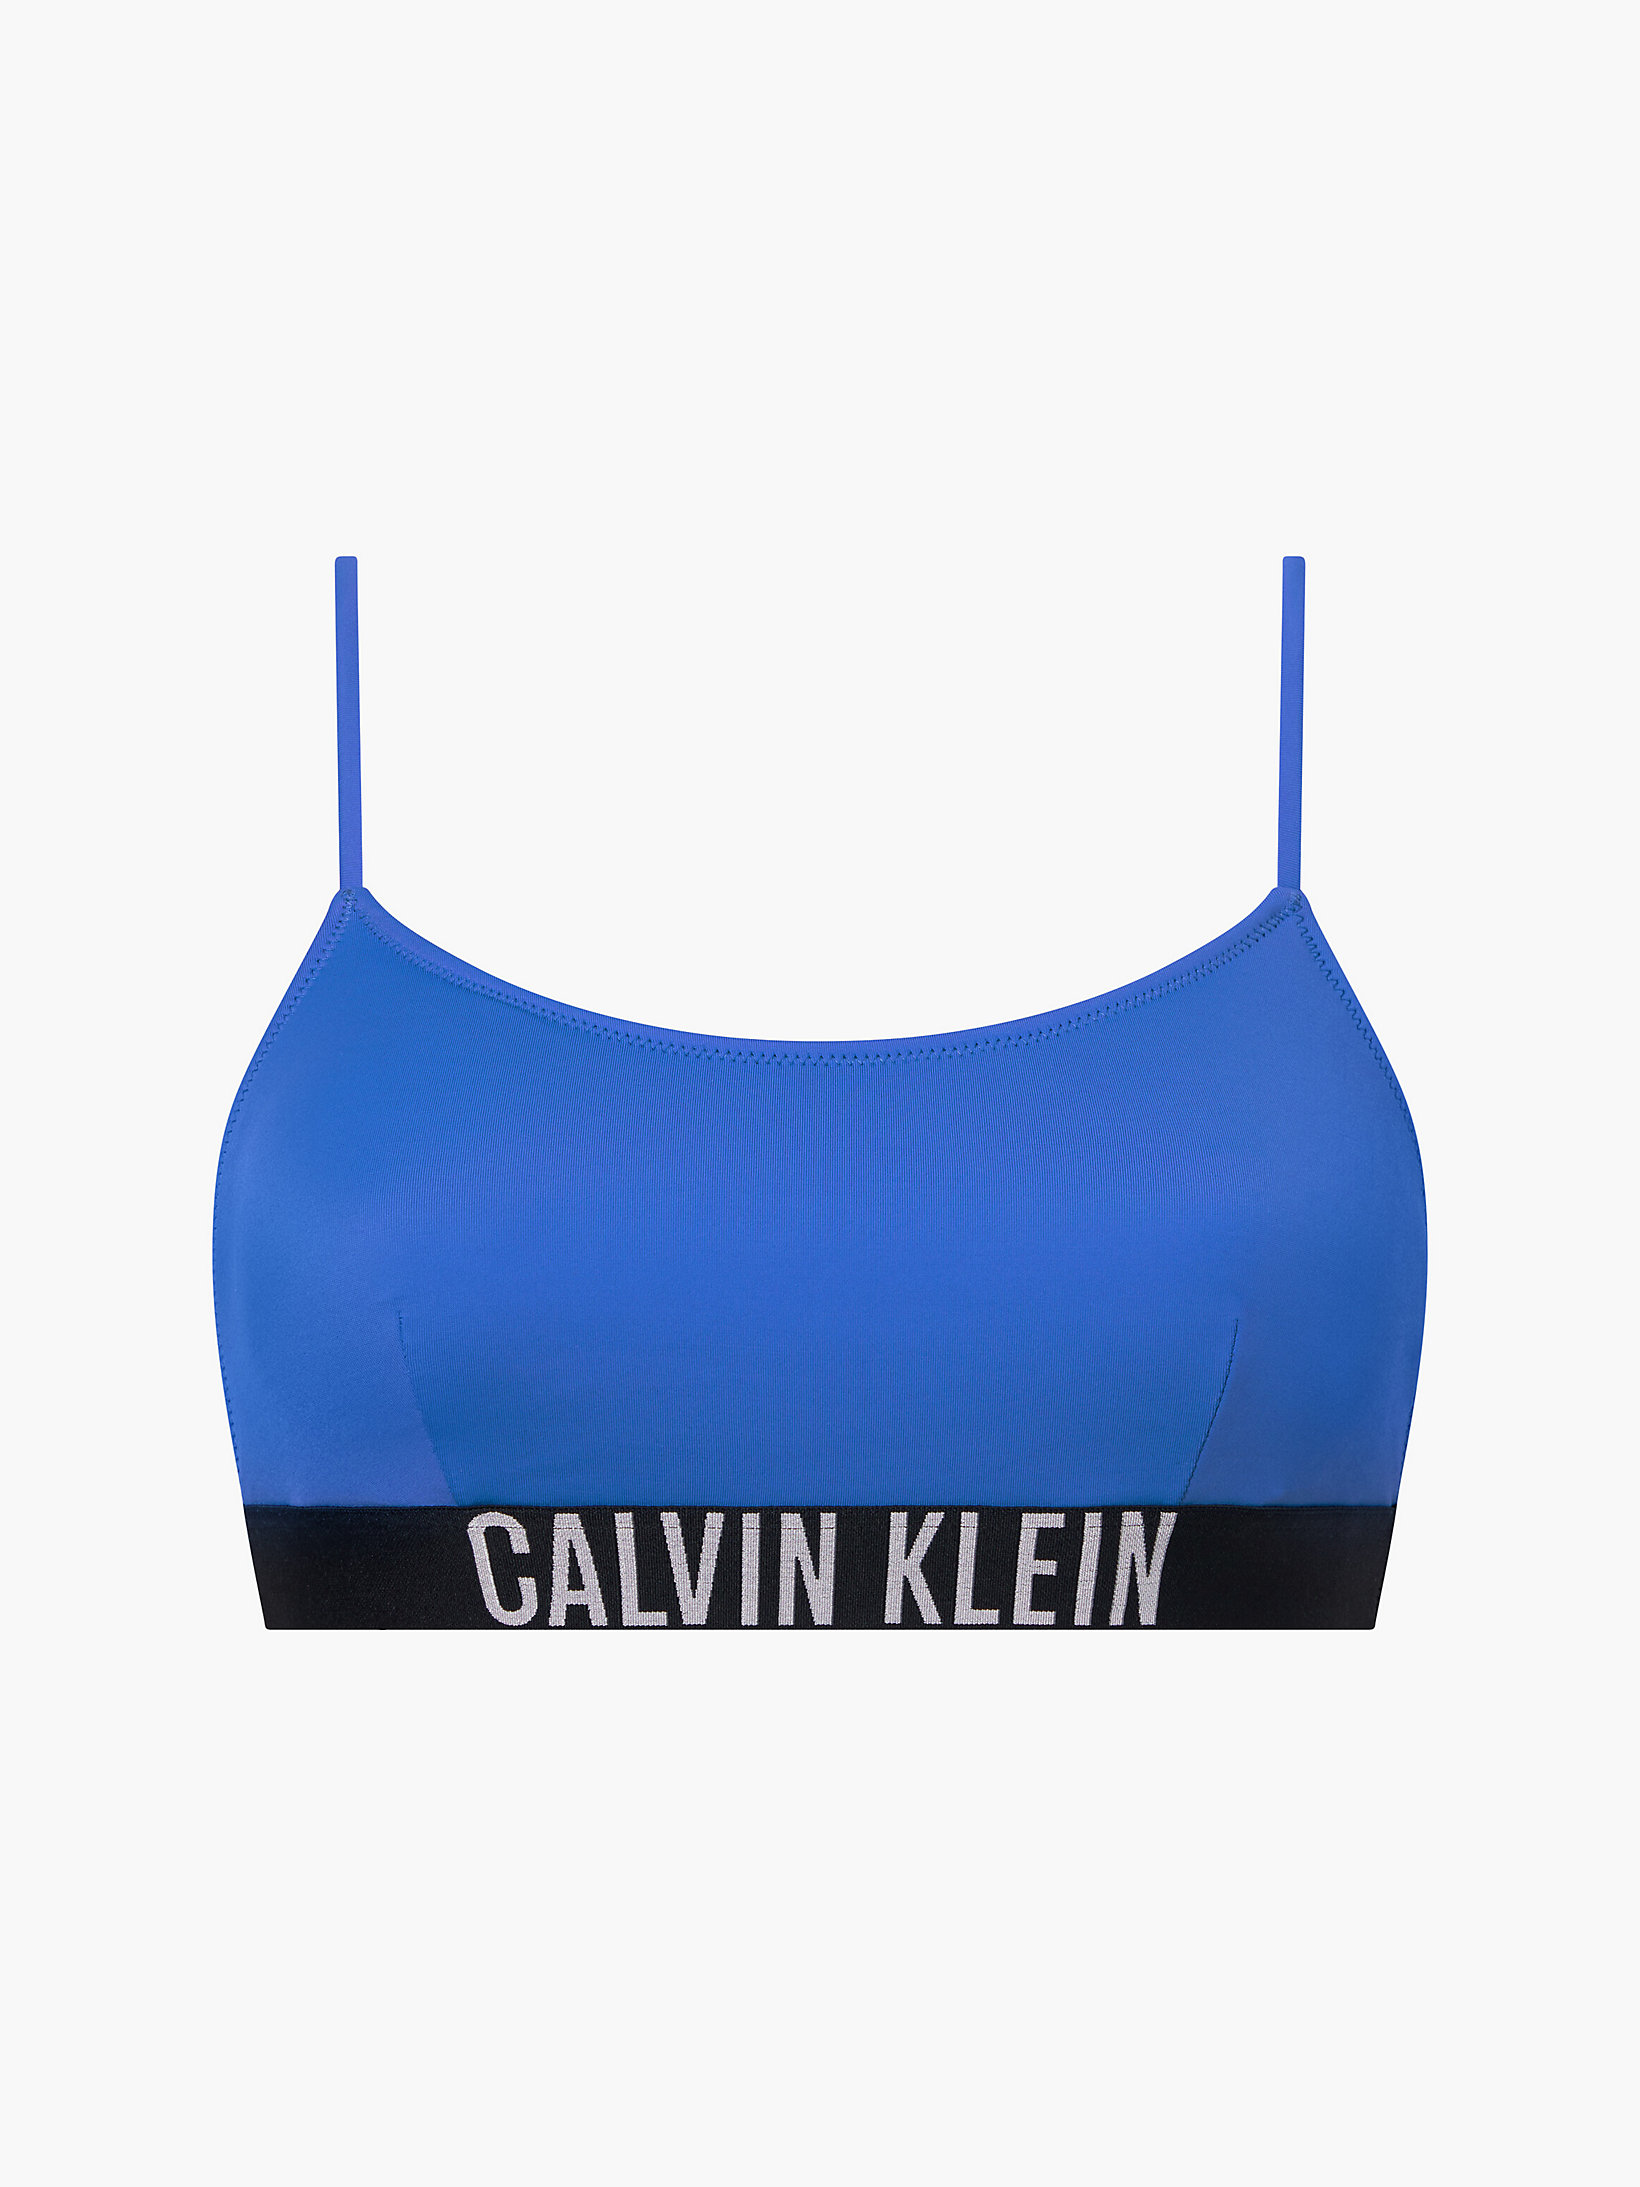 Wild Bluebell > Bерх бикини-бралетт - Intense Power > undefined Женщины - Calvin Klein